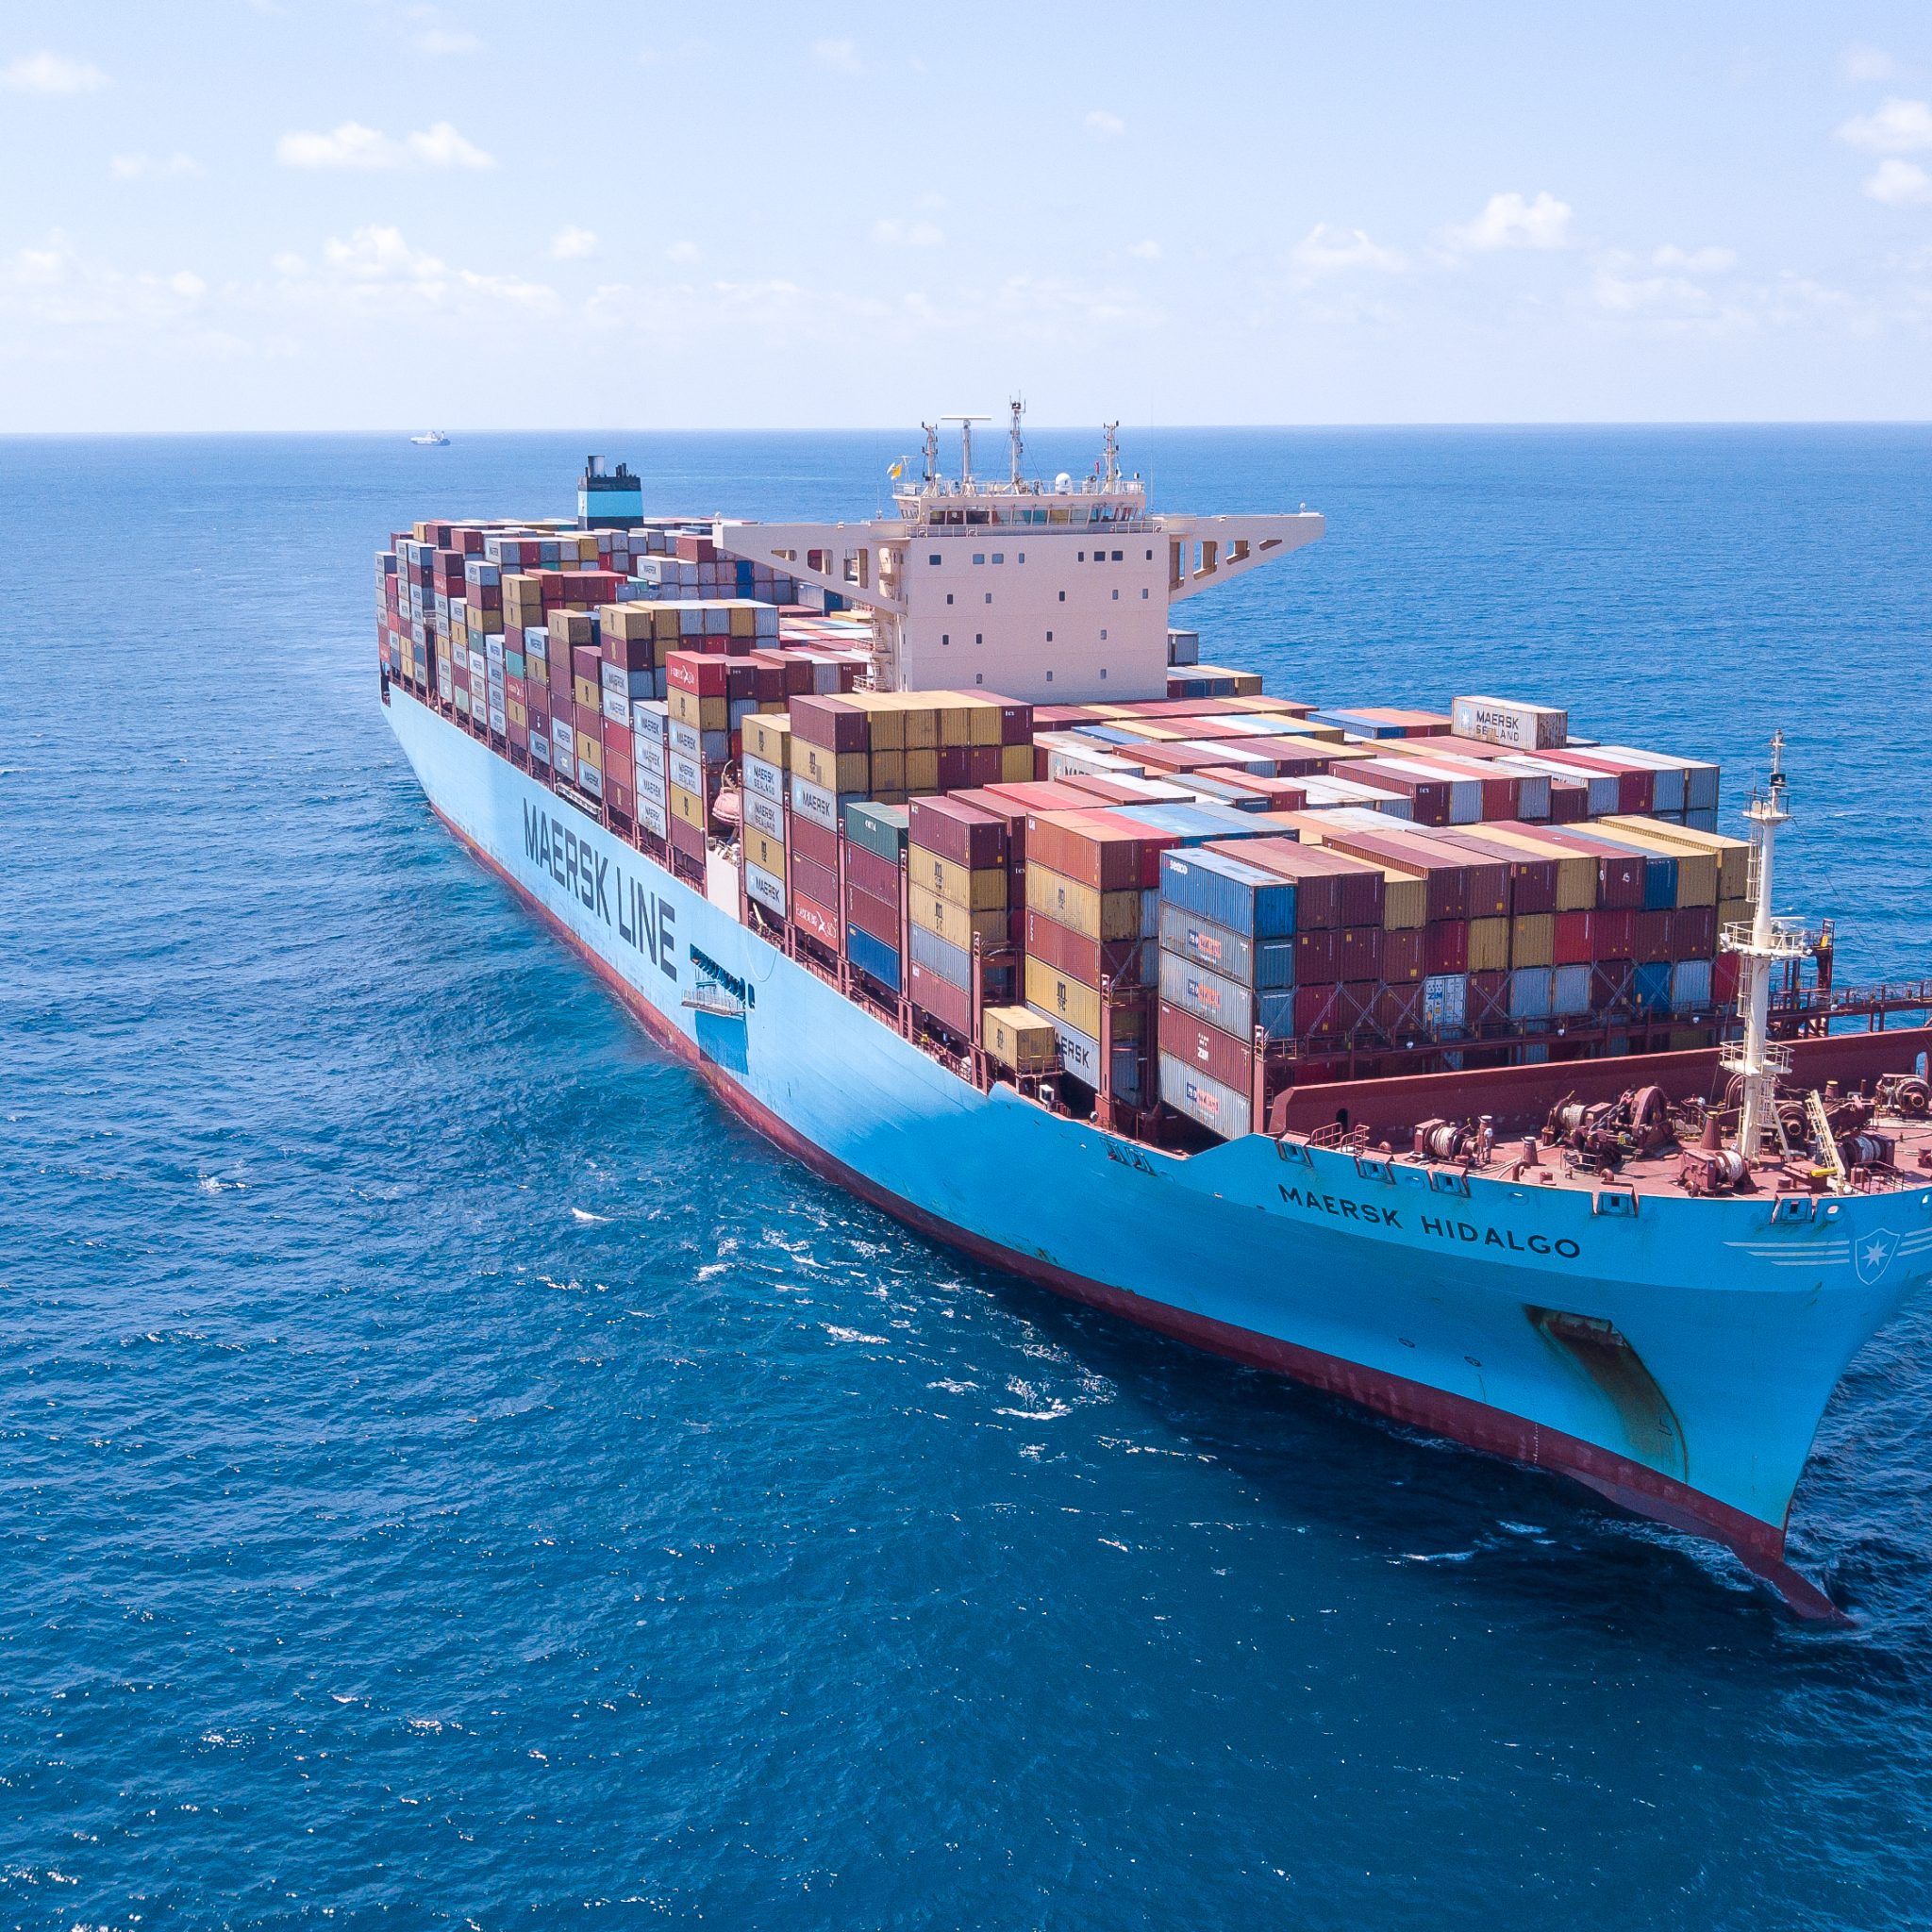 De omleiding maakt de reis volgens de topman van Maersk 13.000 kilometer langer en kost per container honderden dollars meer aan onder meer brandstof.